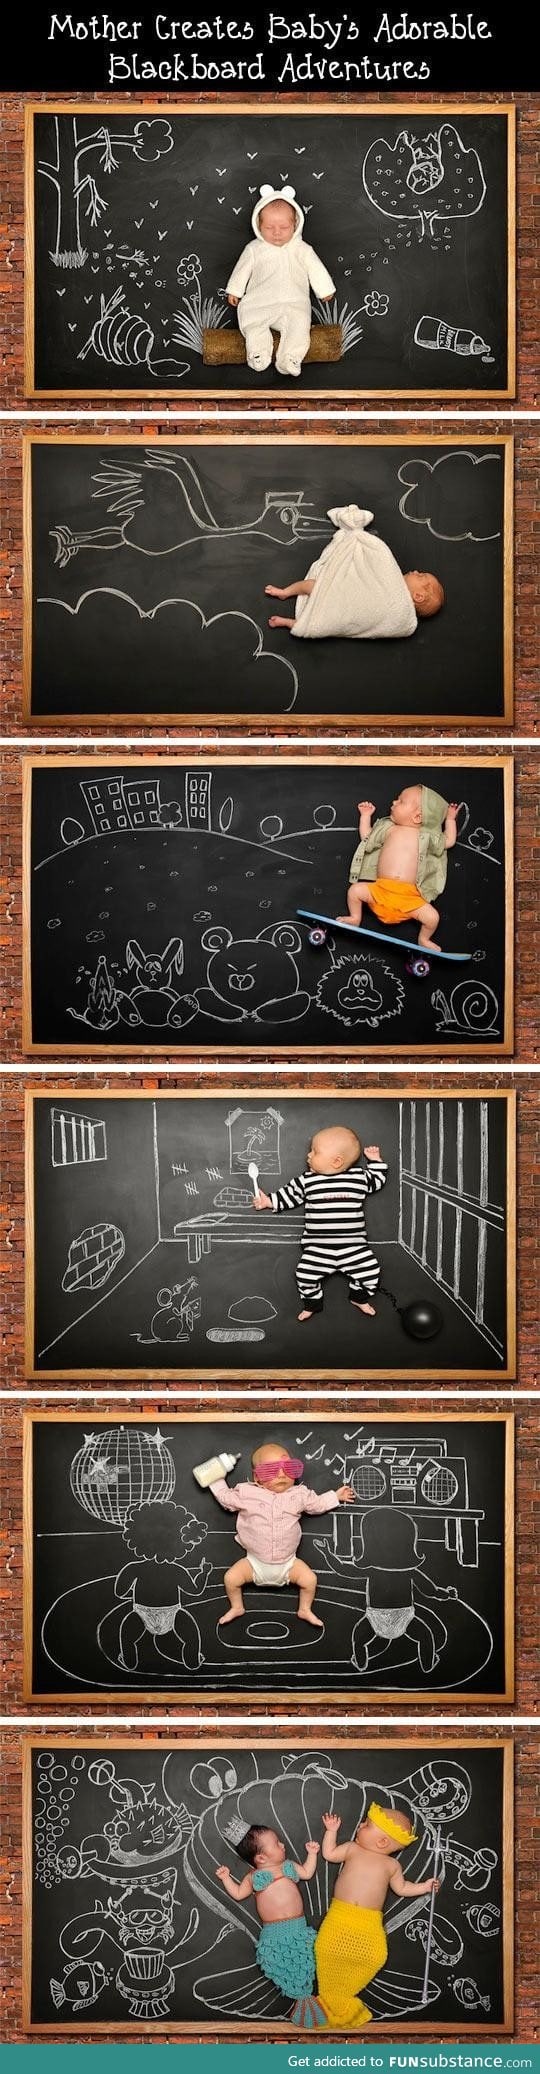 Baby's Blackboard Adventures